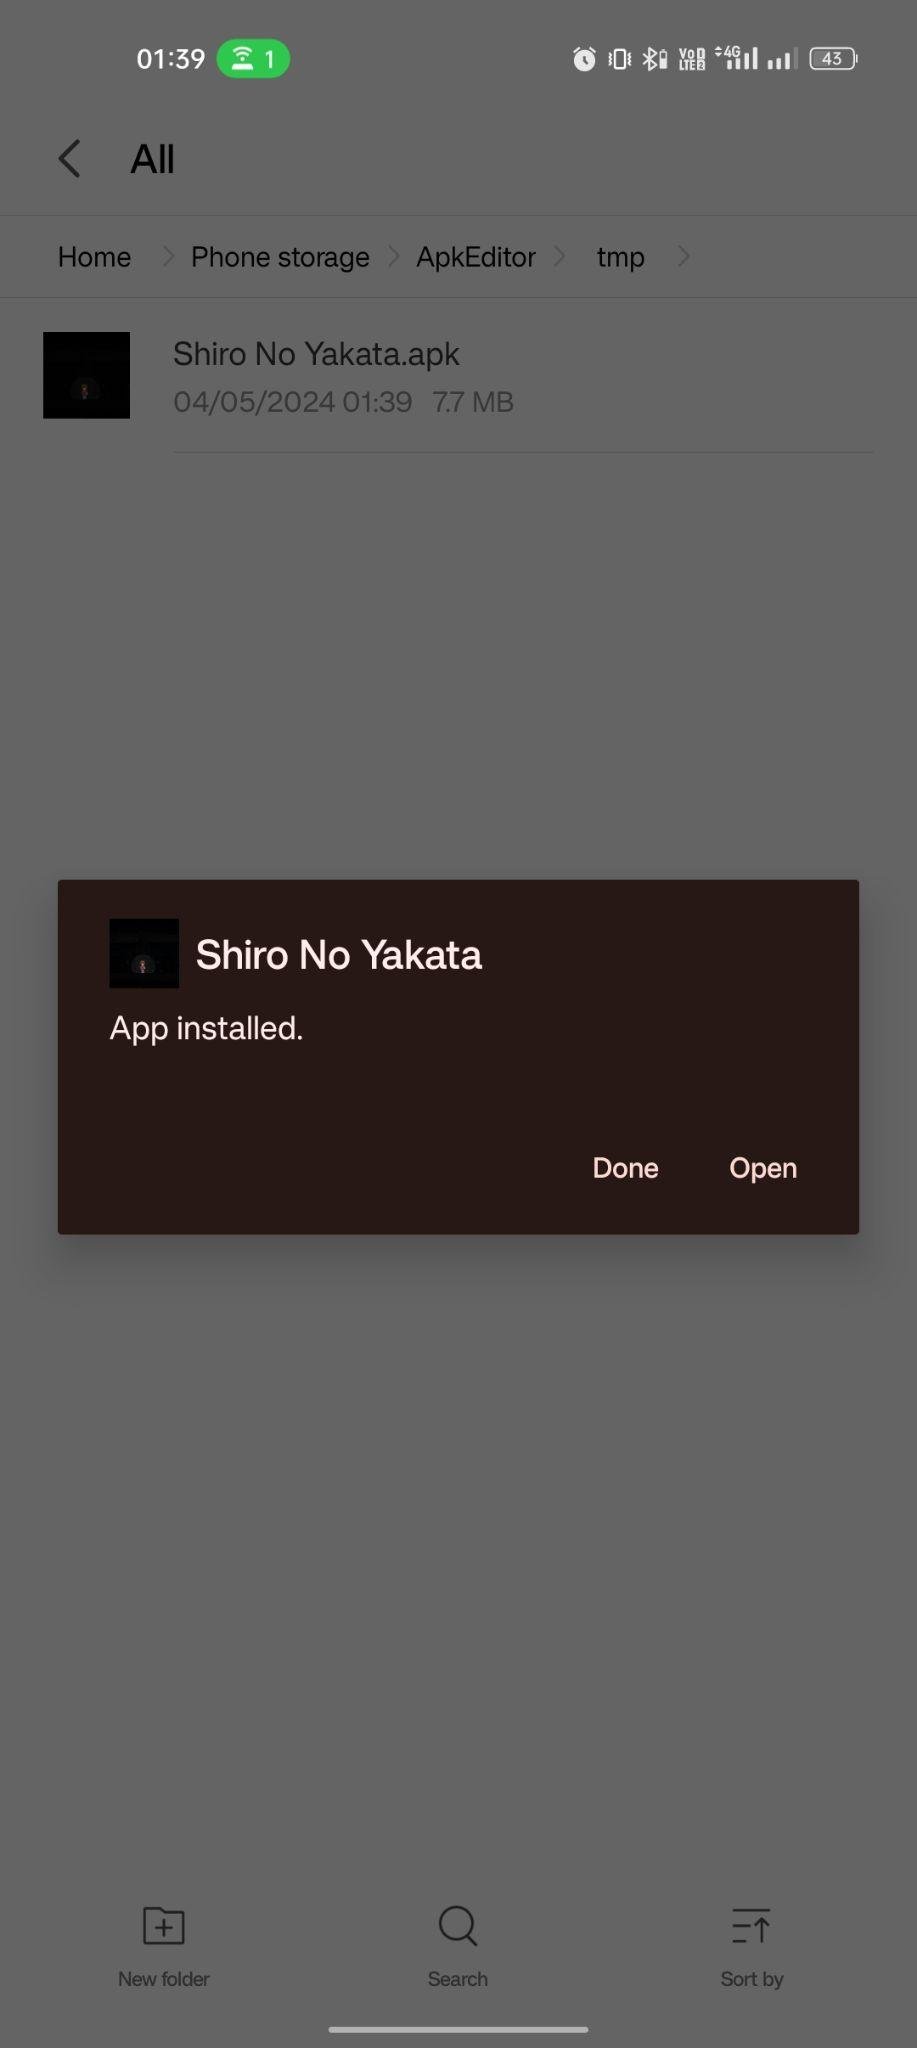 Shiro No Yakata apk installed